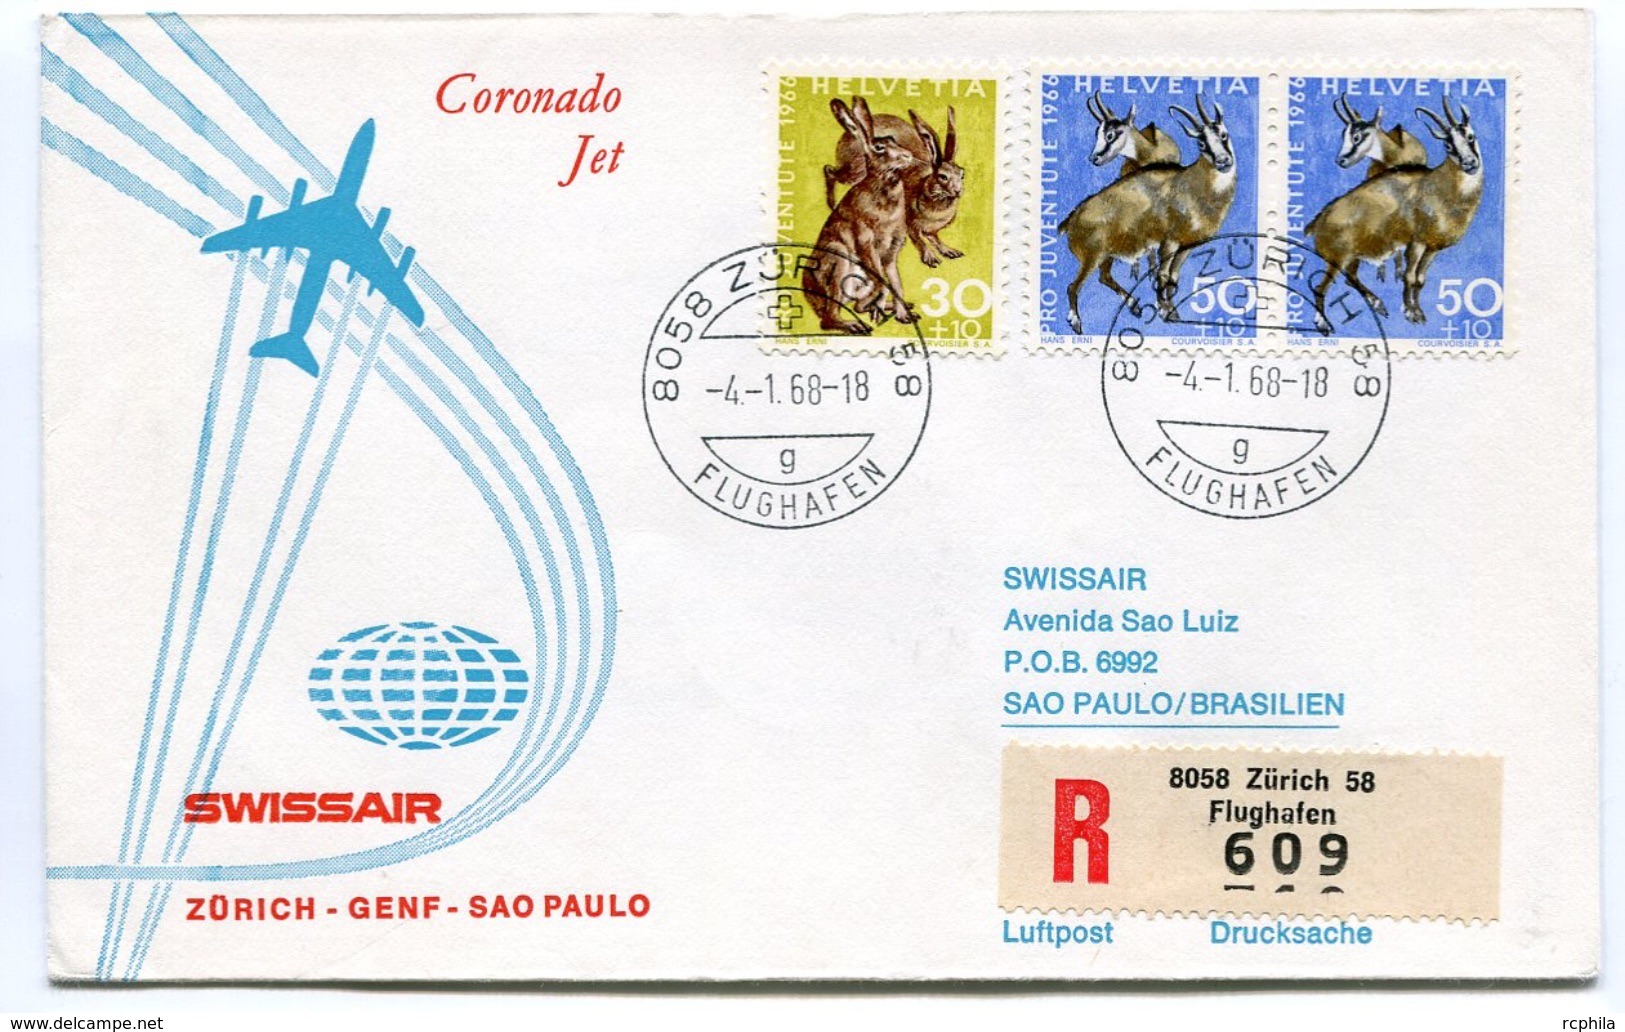 RC 6608 SUISSE SWITZERLAND 1968 1er VOL SWISSAIR ZURICH - SAO PAULO BRESIL FFC LETTRE COVER - Erst- U. Sonderflugbriefe